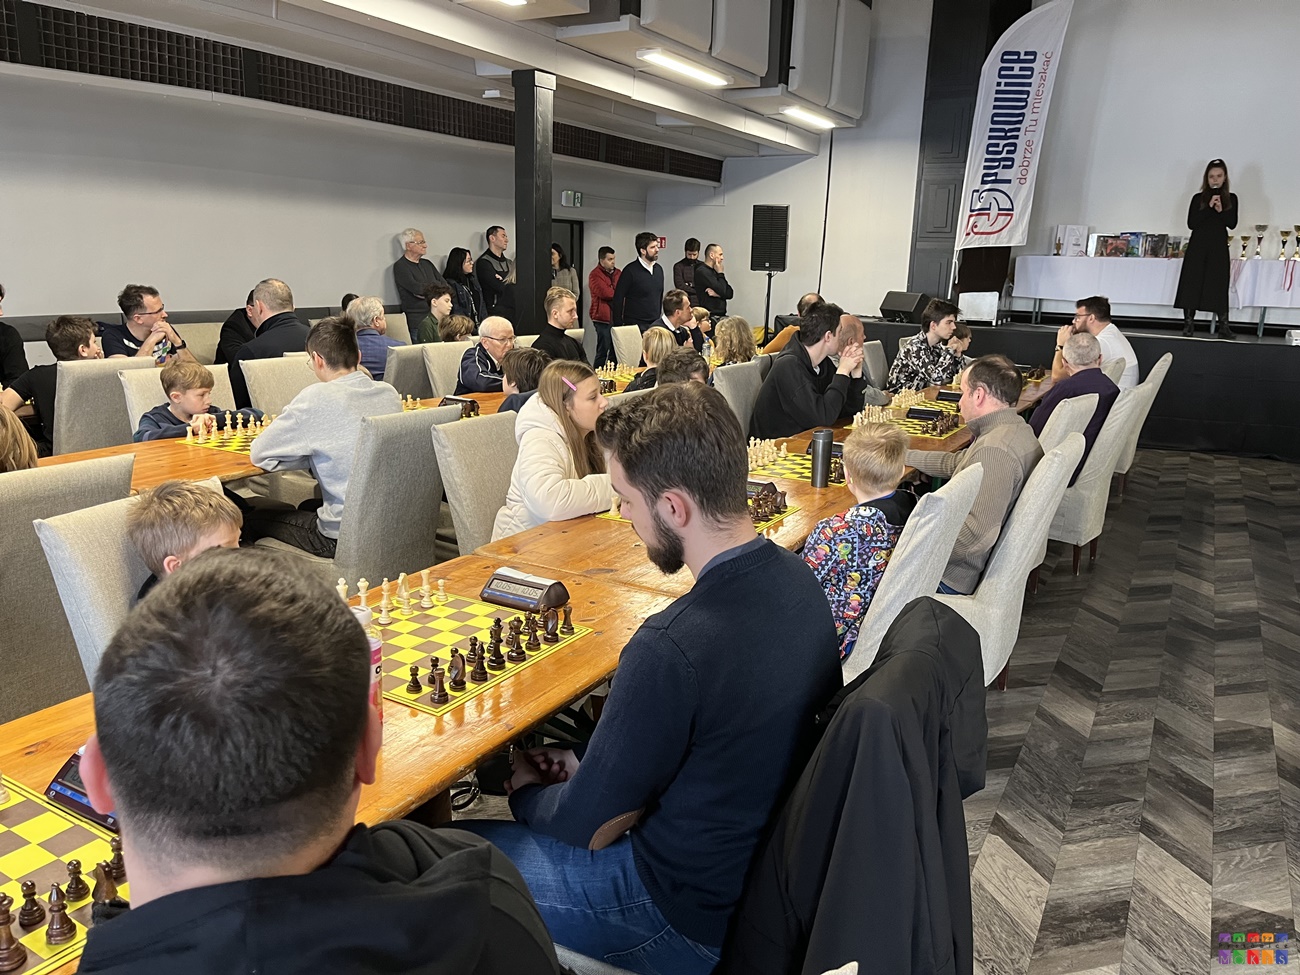 Zdjęcie przedstawia ogólny widok na salę widowiskową gdzie rozstawione są stoły, przy których siedzą ludzie grający w szachy.